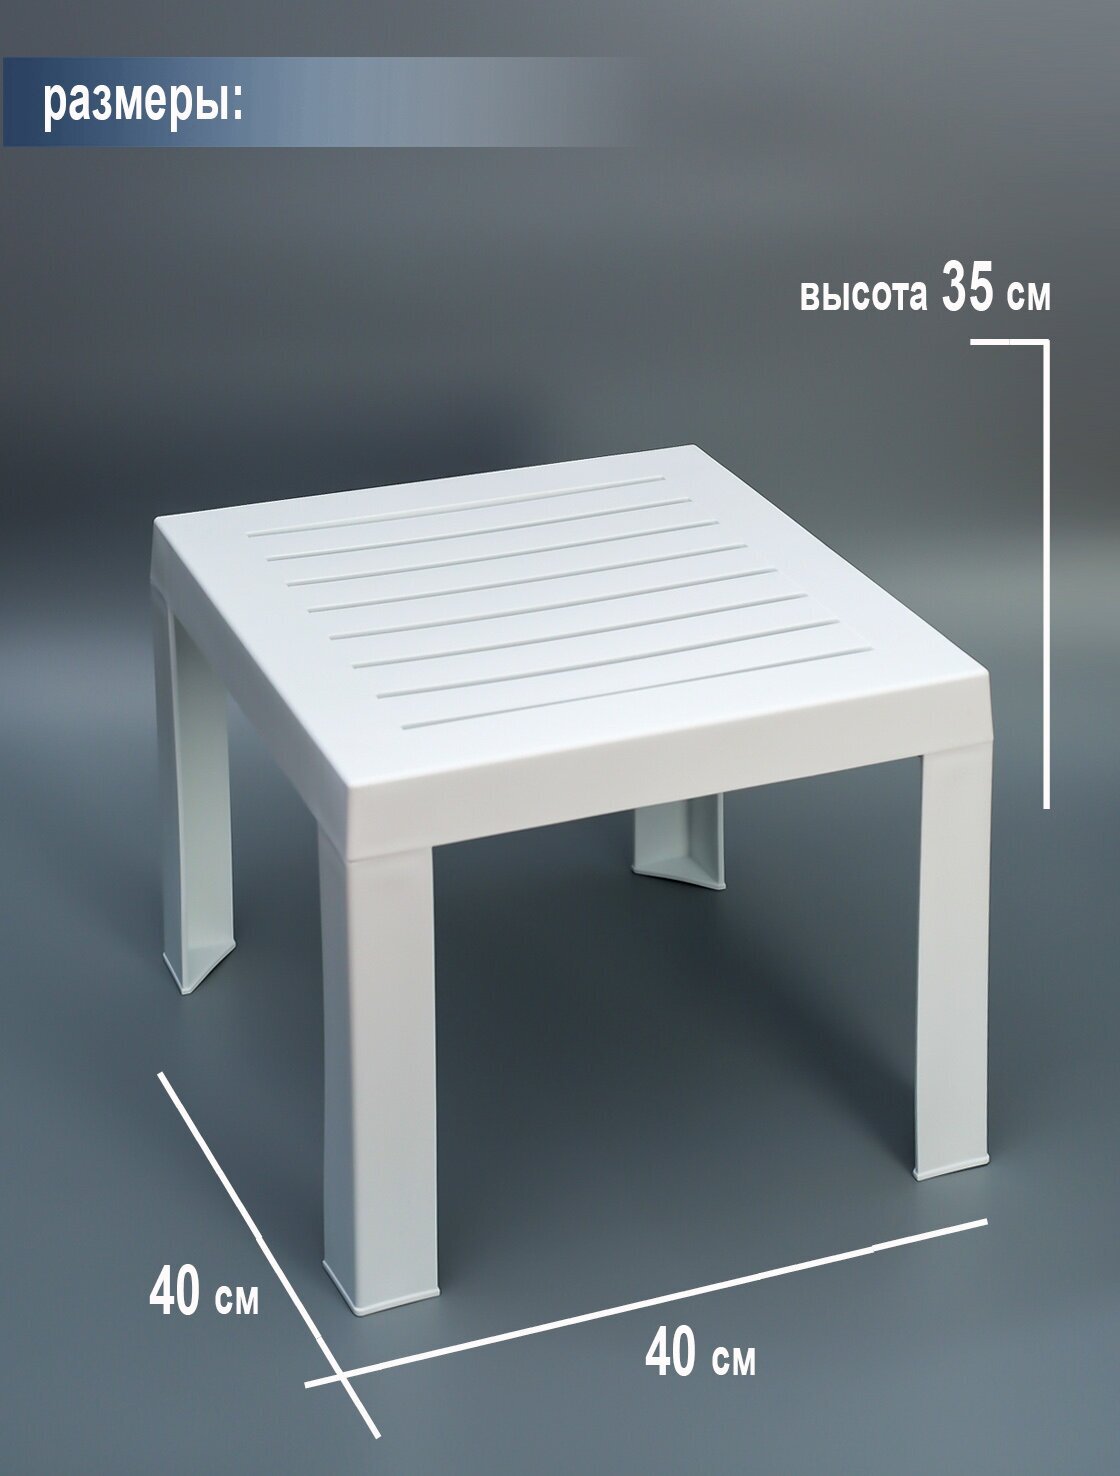 Столик к шезлонгу пластиковый Elfplast размером 35х40х40, практичный садовый столик съемными ножками, белый - фотография № 4